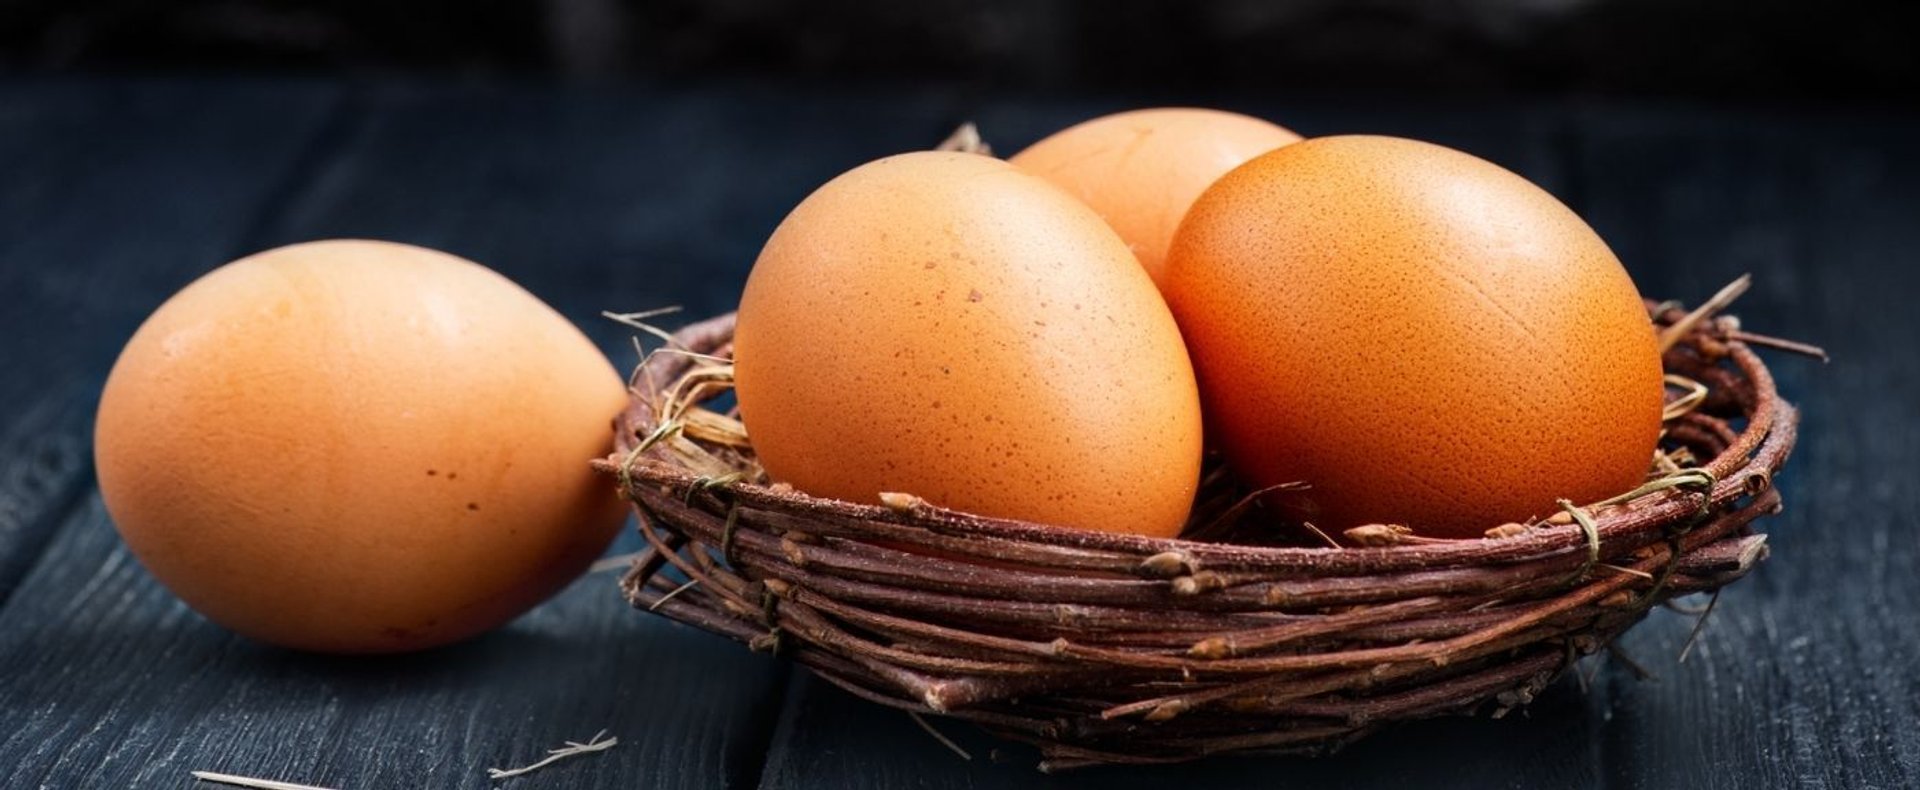 Jak sprawdzić, czy jajka są świeże?